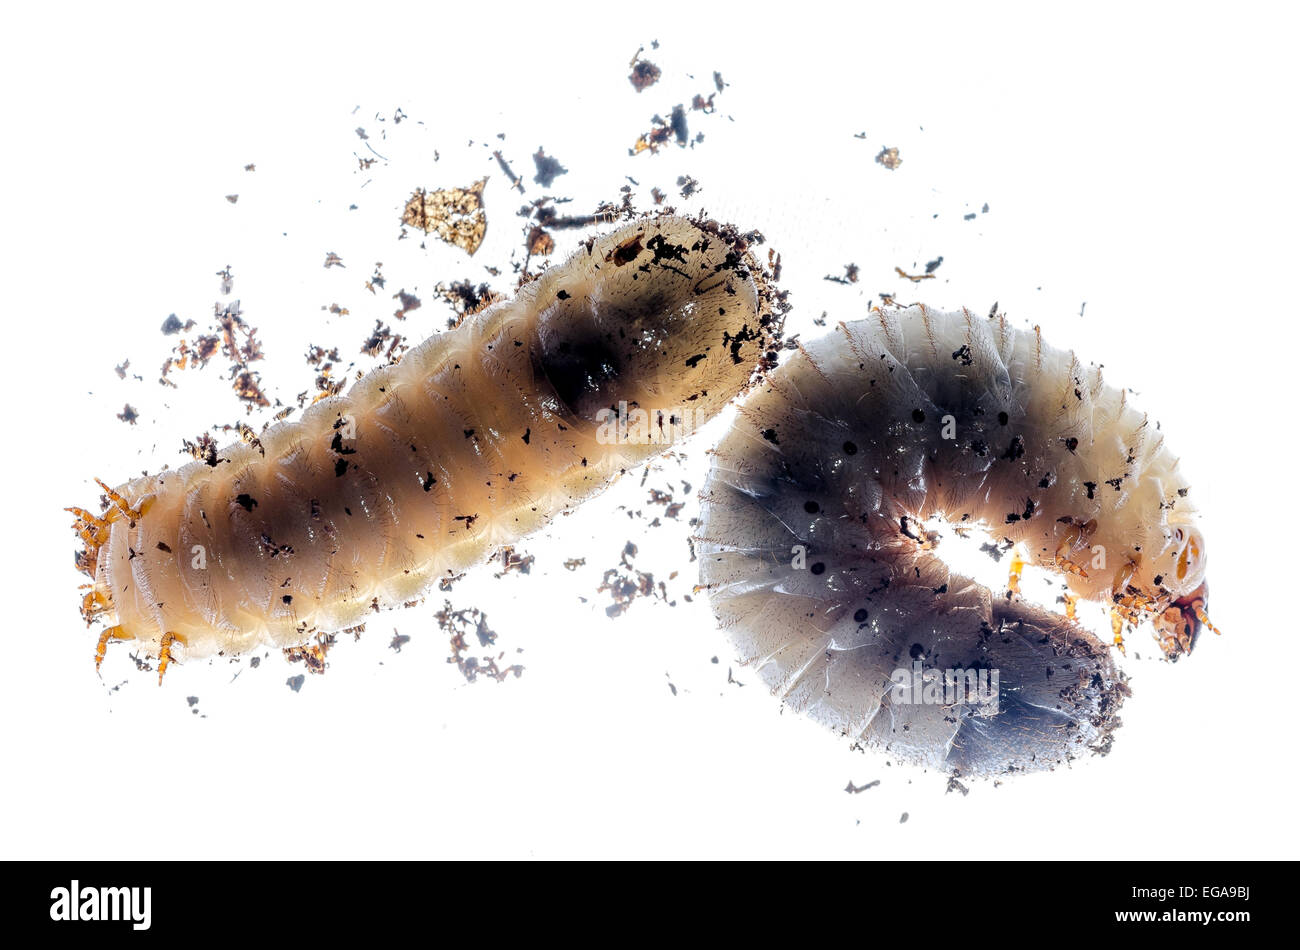 Les larves de coléoptères translucide Banque D'Images